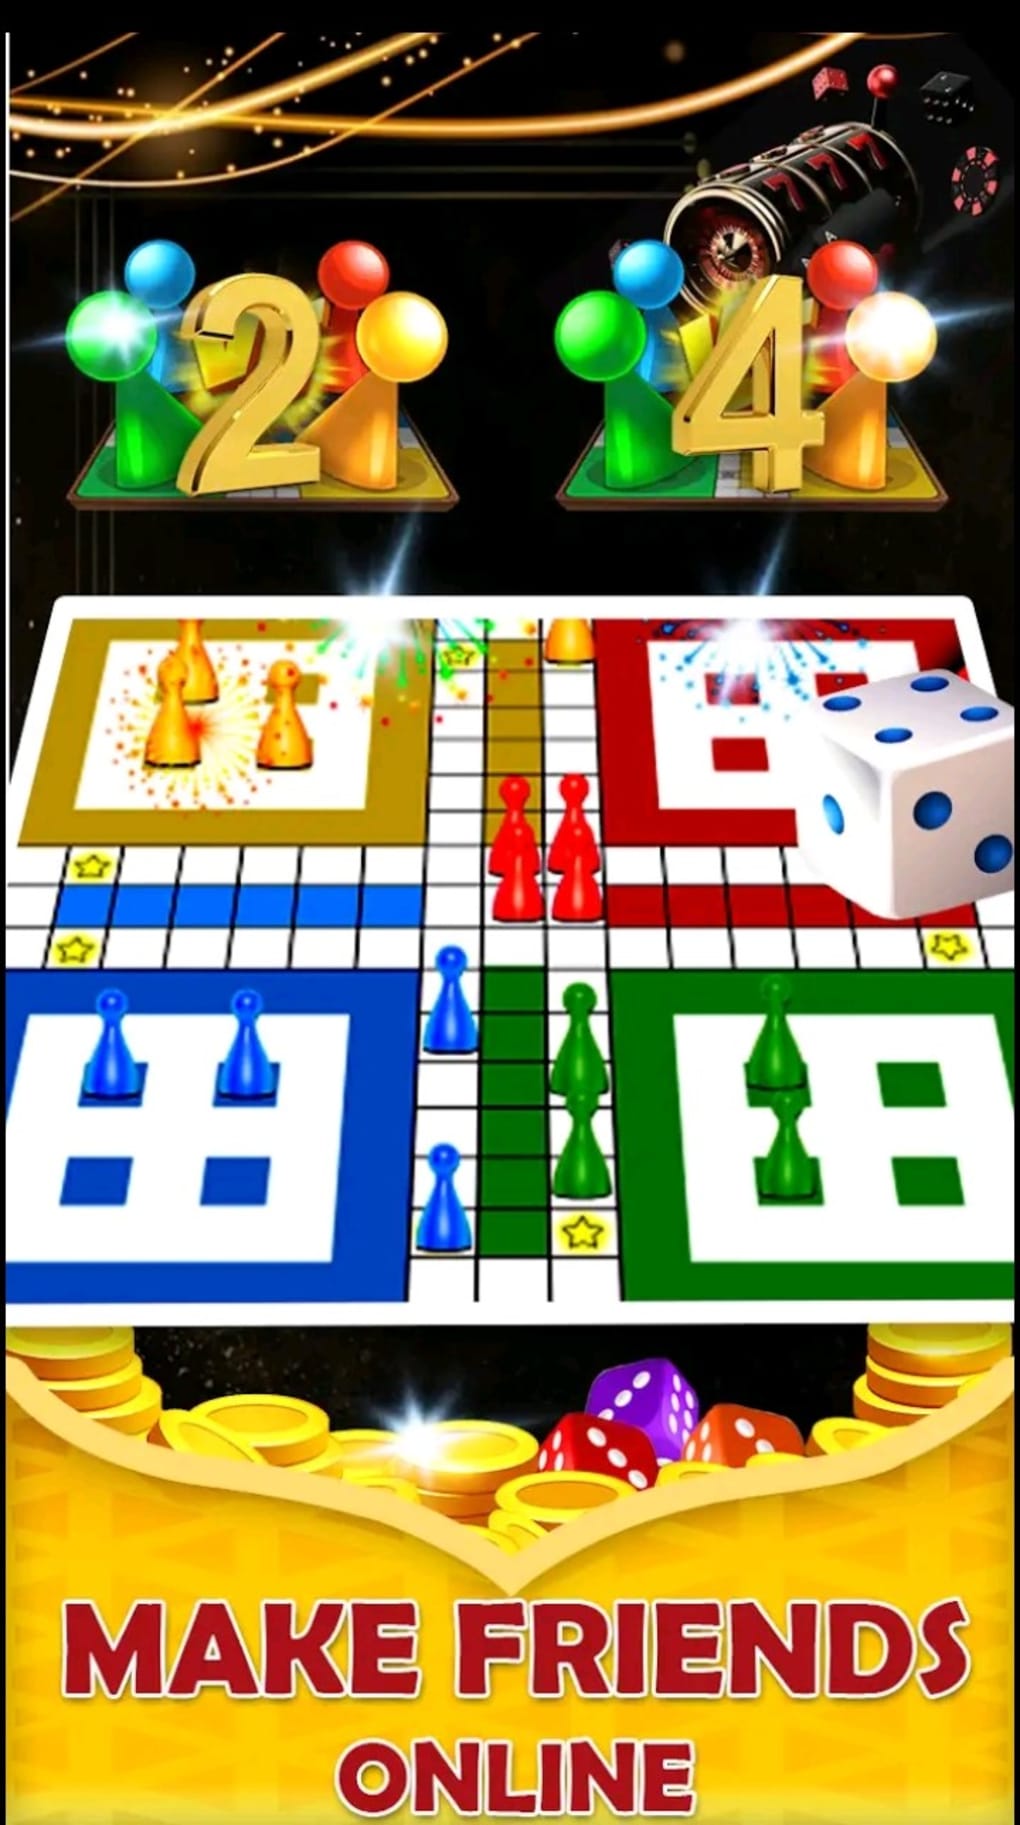 Juegos online para jugar con amigos: videojuegos gratis para Android, iOS y  PC, Ludo online, monopoly online, tutifruti online, Fotos, Video, Videojuegos